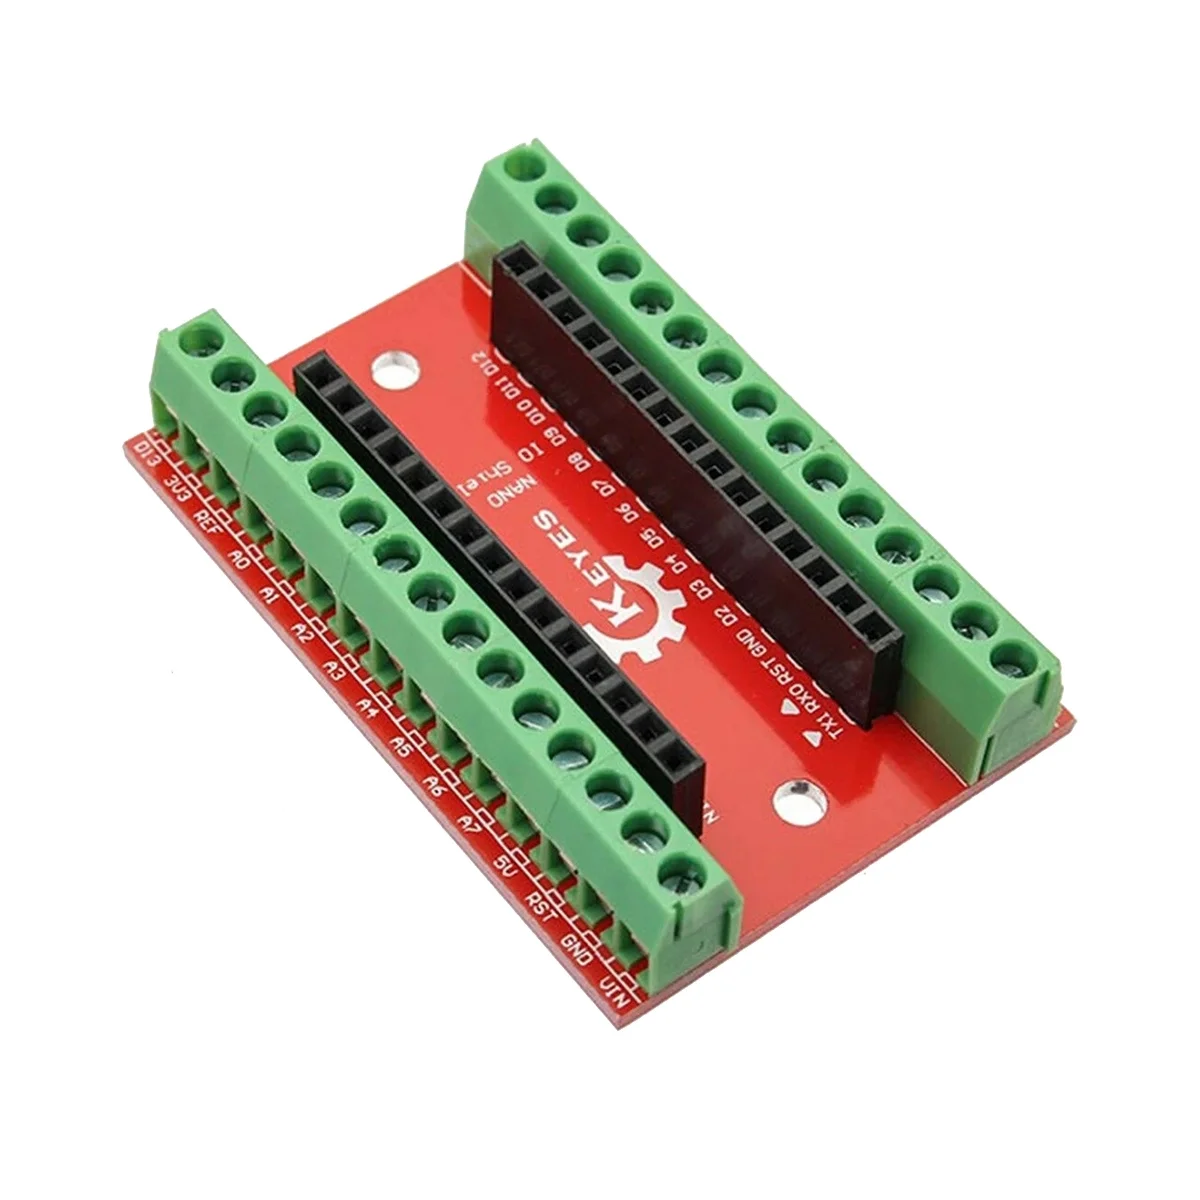 

Контроллер NANO V1.0, терминальный адаптер, плата расширения, щит NANO IO, простая удлинительная пластина для Arduino